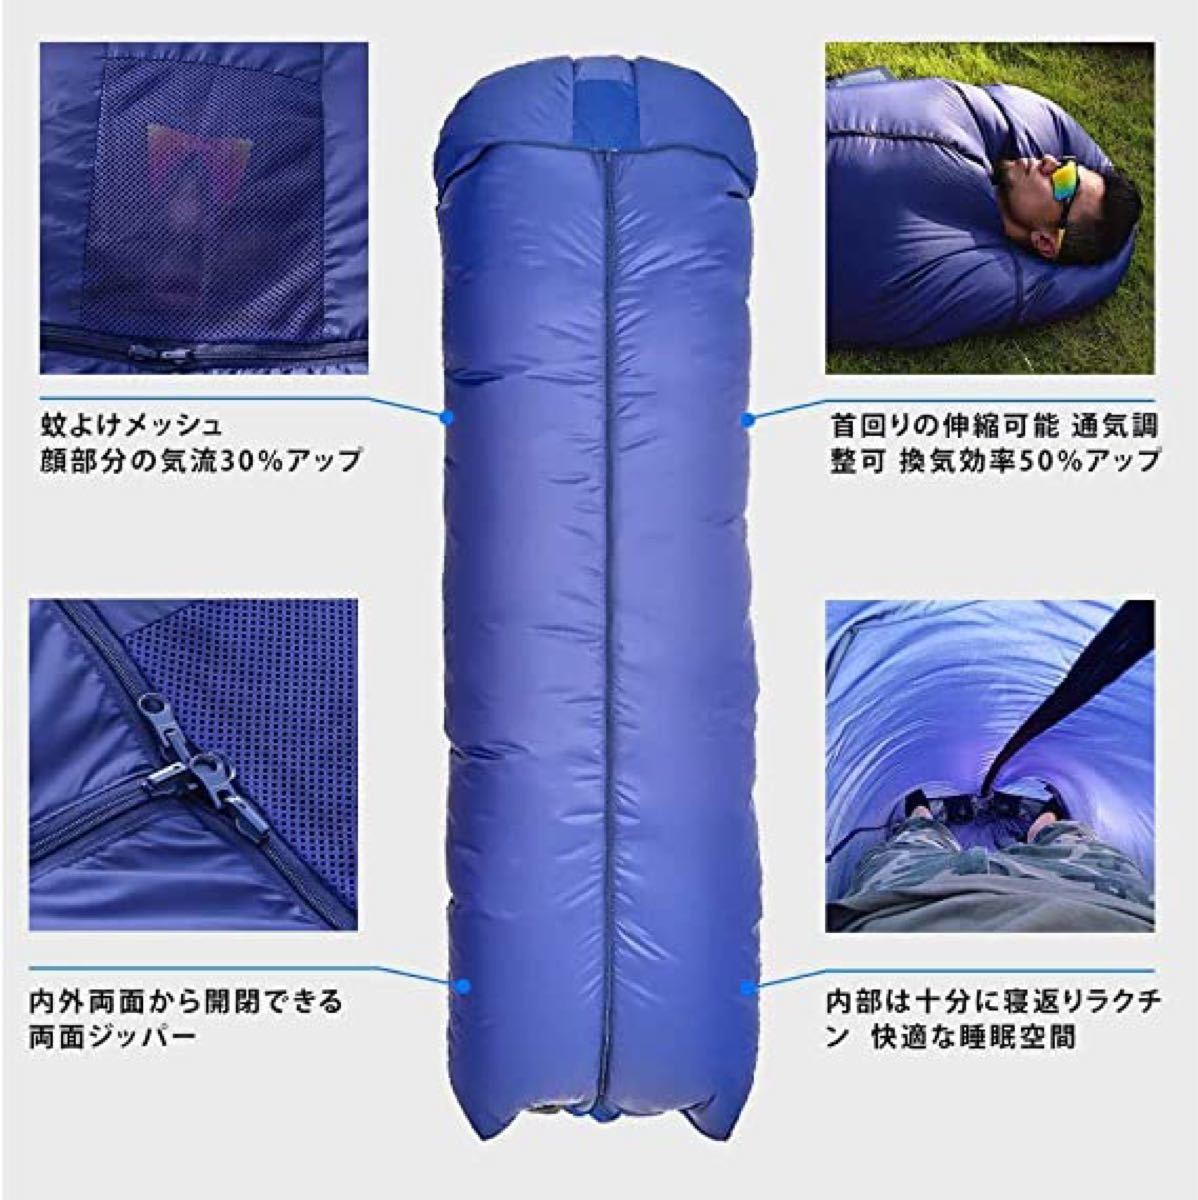 空調寝袋 USB給電ファン付き アウトドア 車中泊 キャンプ 登山扇風機付き寝袋 寝袋シュラフ 軽量 封筒型シュラフ 災害時 